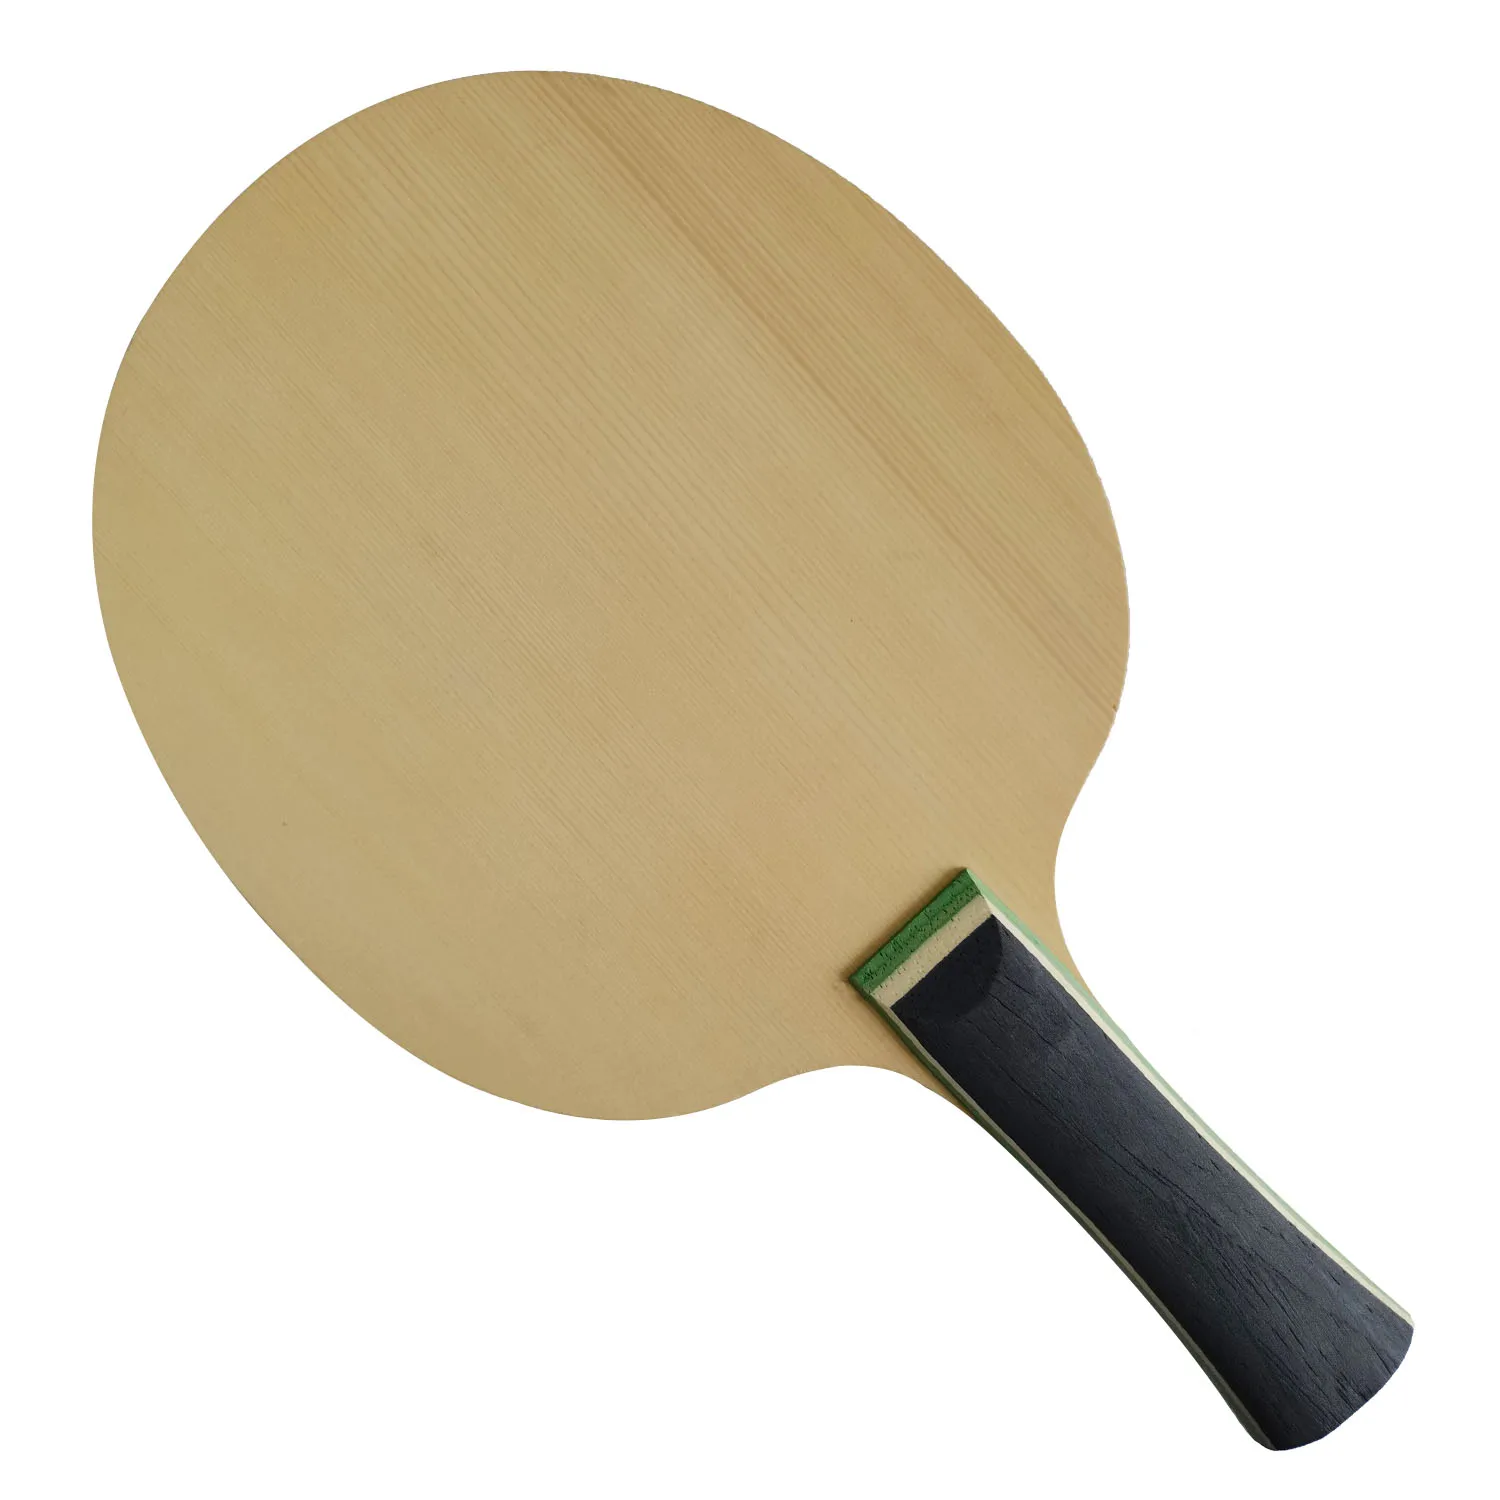 Оригинальная ракетка для настольного тенниса TUTTLE WEALTH RONGHUA Blade, бита для пинг-понга, лопатка 1